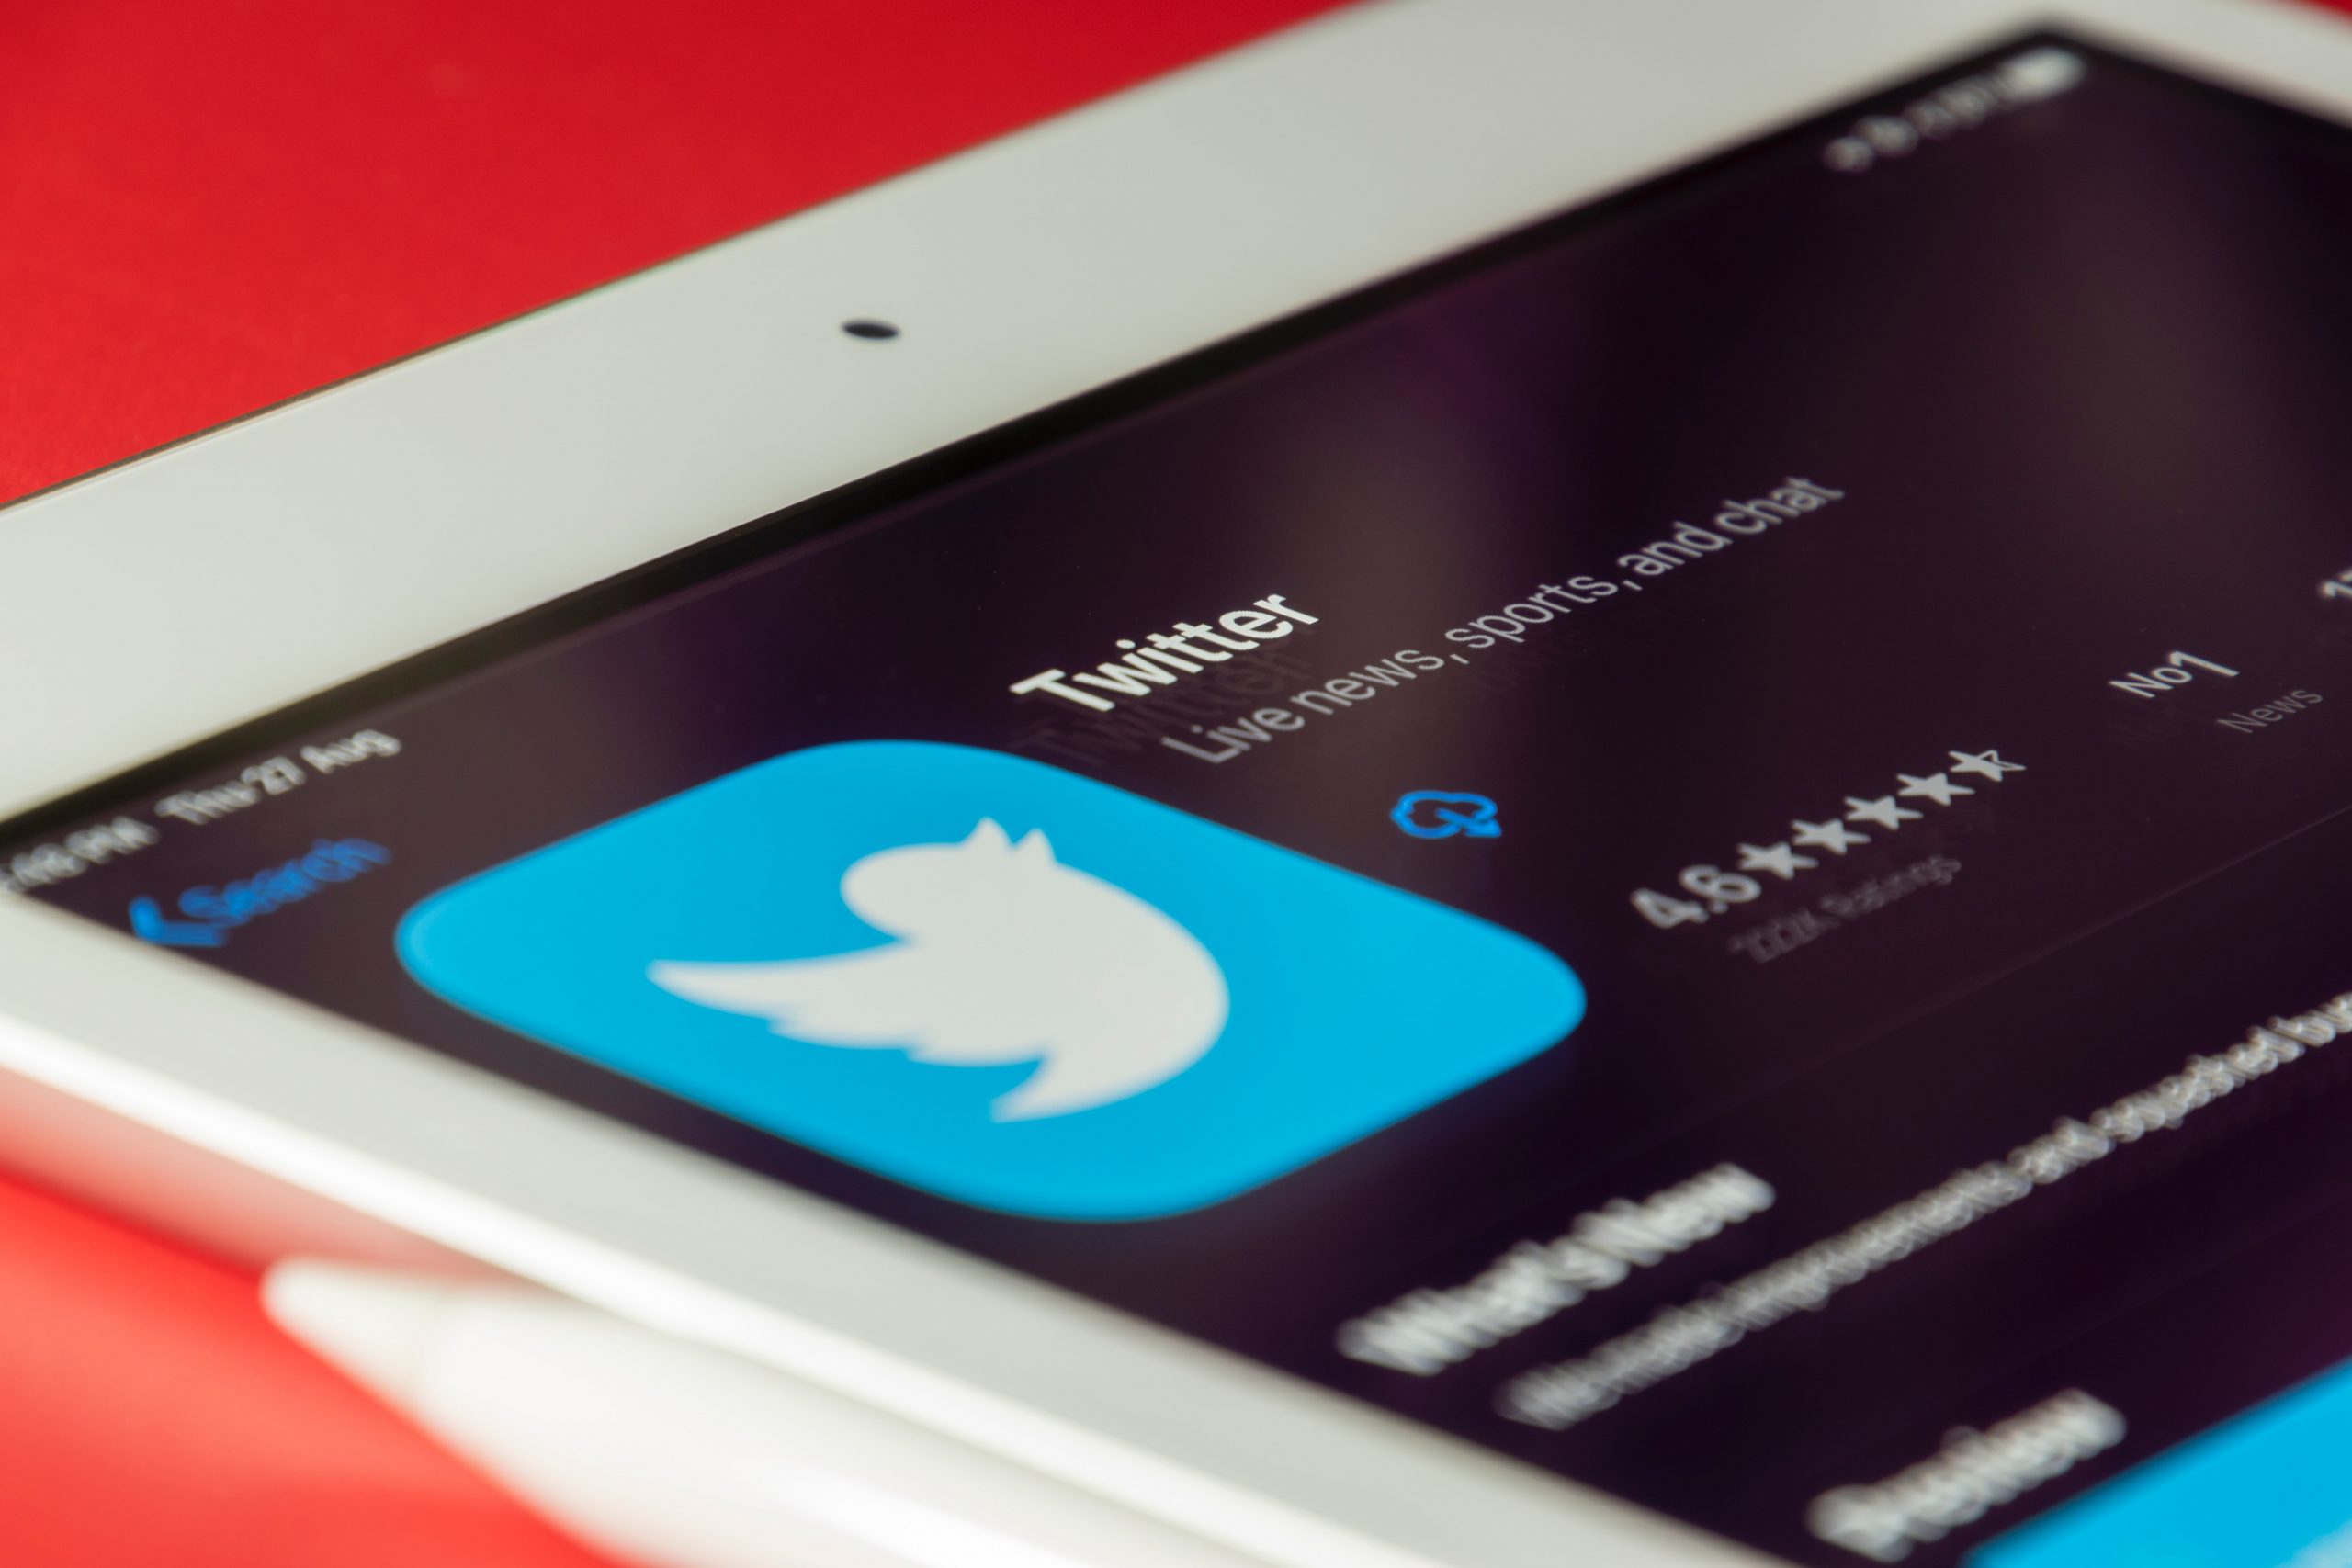 ENSZ: veszélyes precedens újságírók letiltása a Twitterről